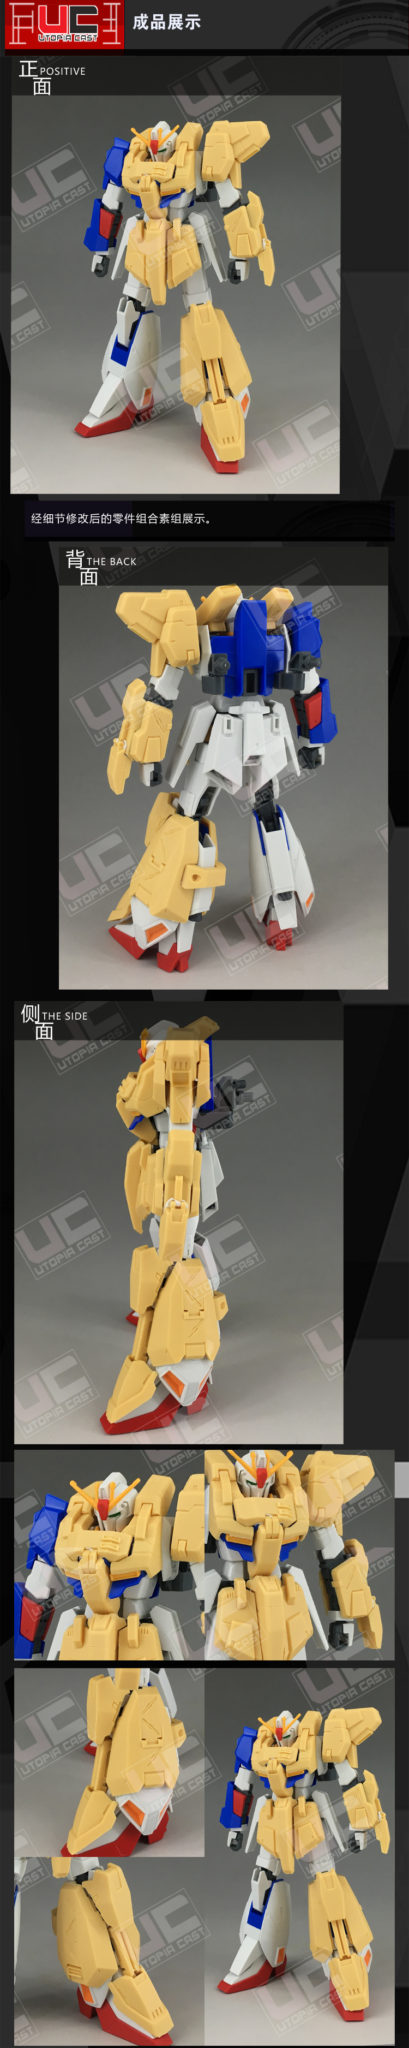 UC C3 1/144  Full Armor  Zeta Gundam Ver.B-Club